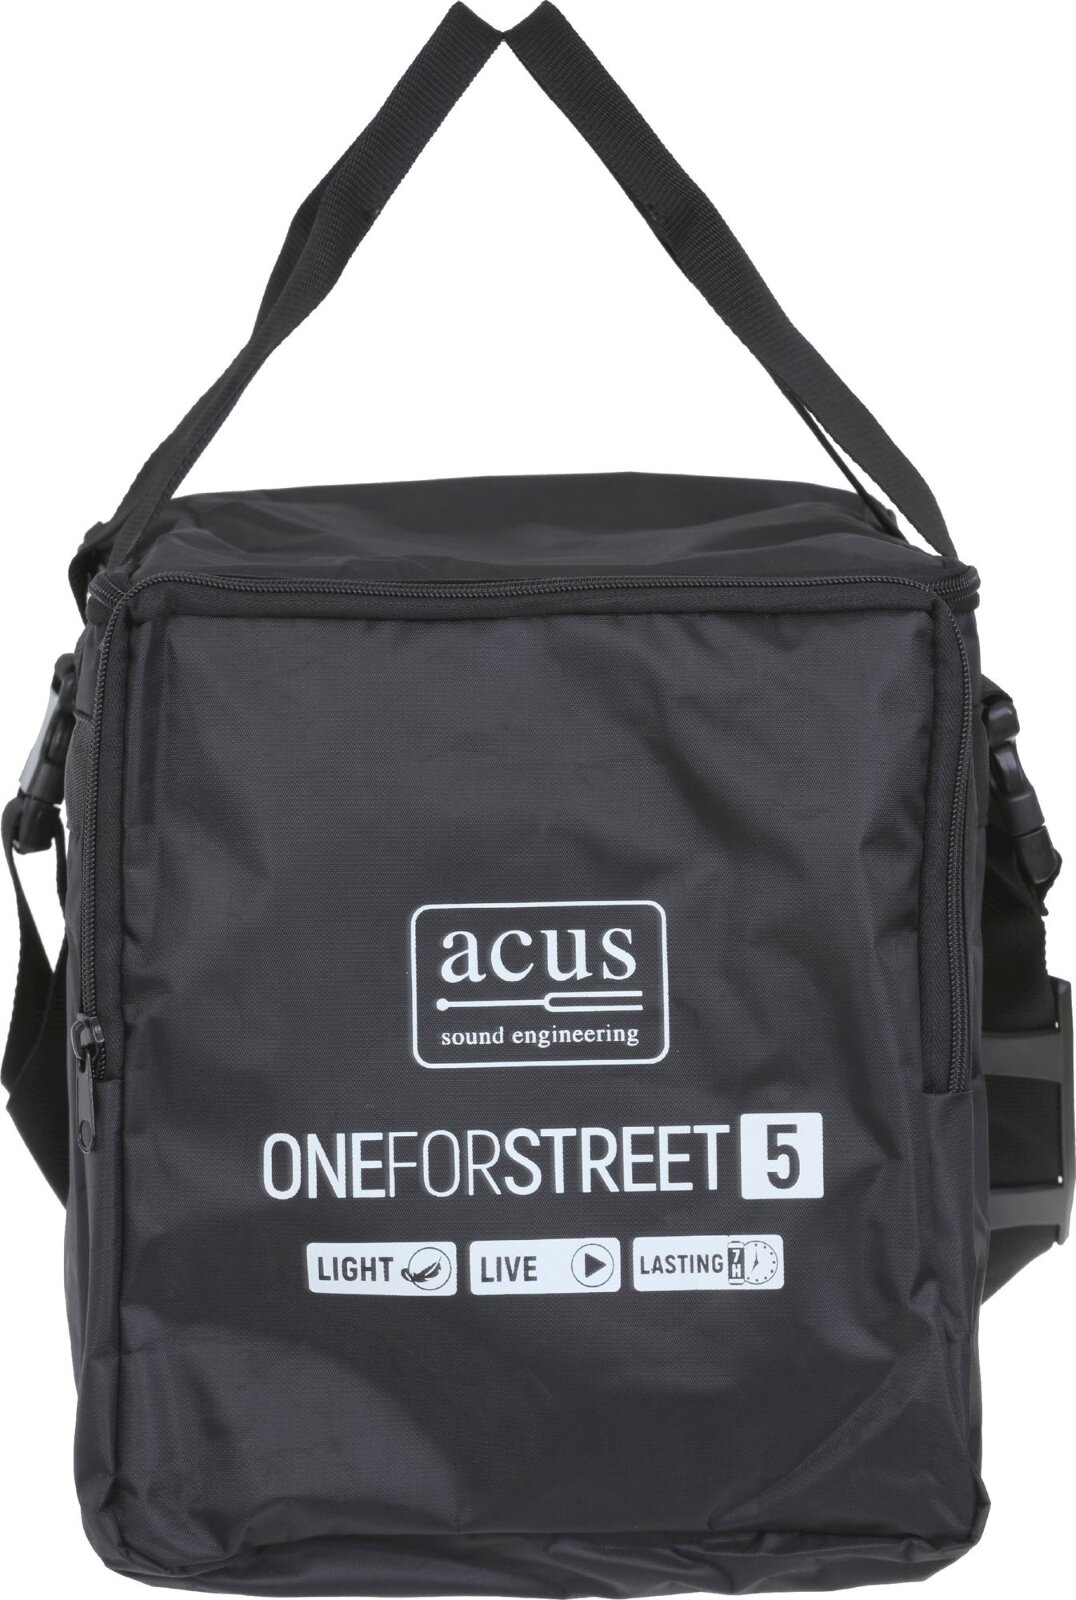 ACUS One für Street 5 BAG : photo 1